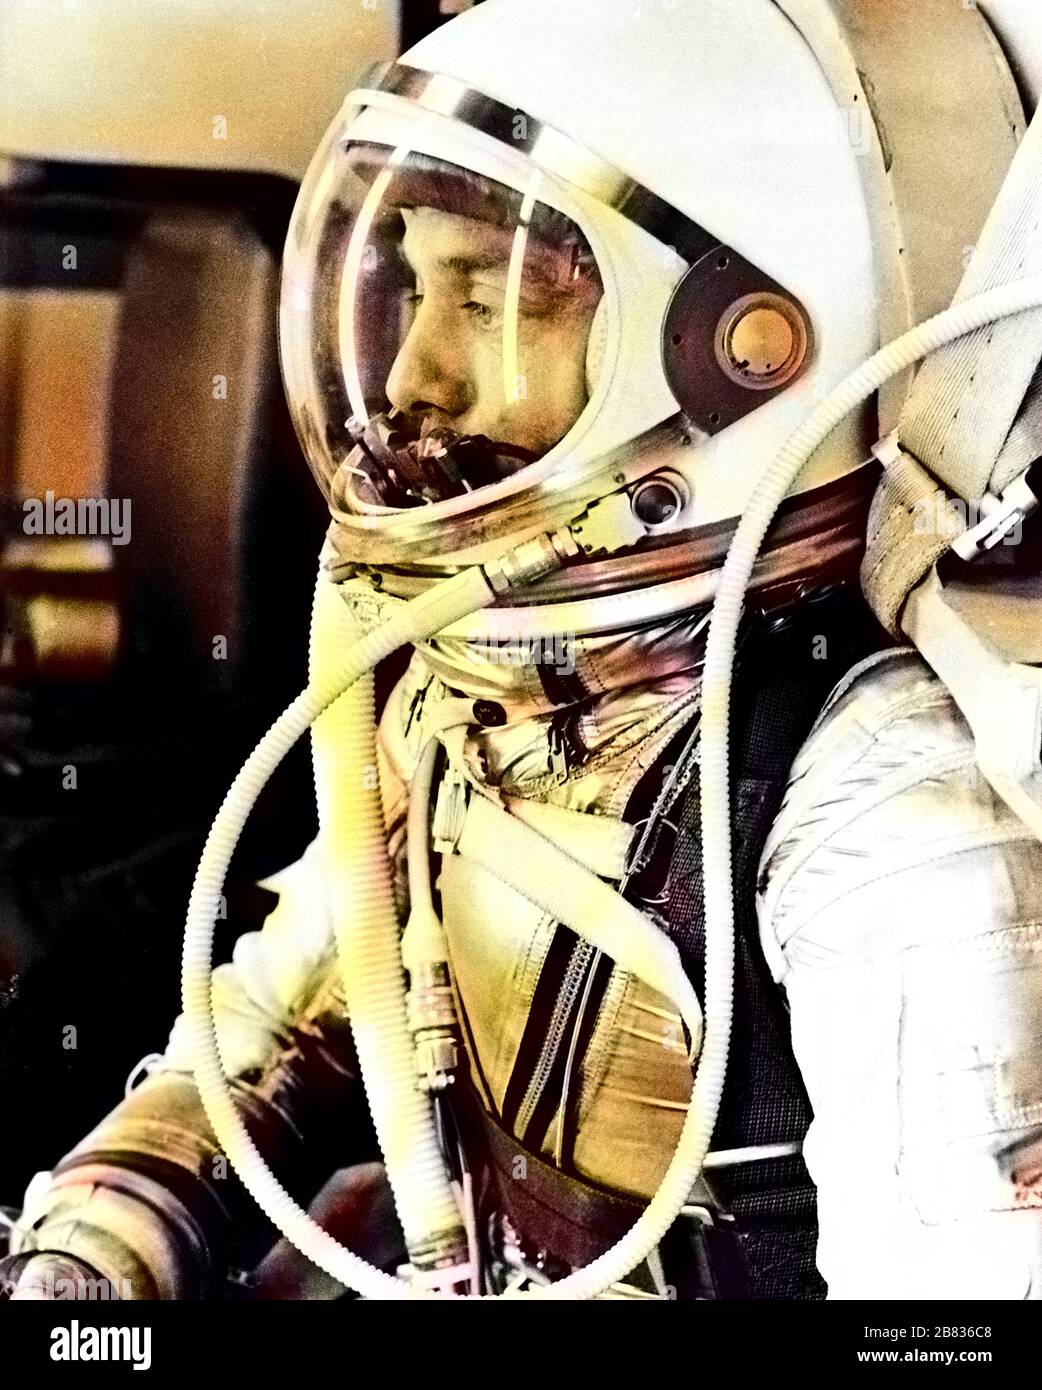 Astronaut Alan Shepard in seinem silbernen Druckanzug, der sich auf den bevorstehenden Start von Mercury-Redstone 3 (MR-3) am 5. Mai 1961 vorbereitet. Image Courtesy National Aeronautics and Space Administration (NASA). Hinweis: Das Bild wurde mit einem modernen Verfahren digital koloriert. Farben sind möglicherweise nicht periodengenau. () Stockfoto